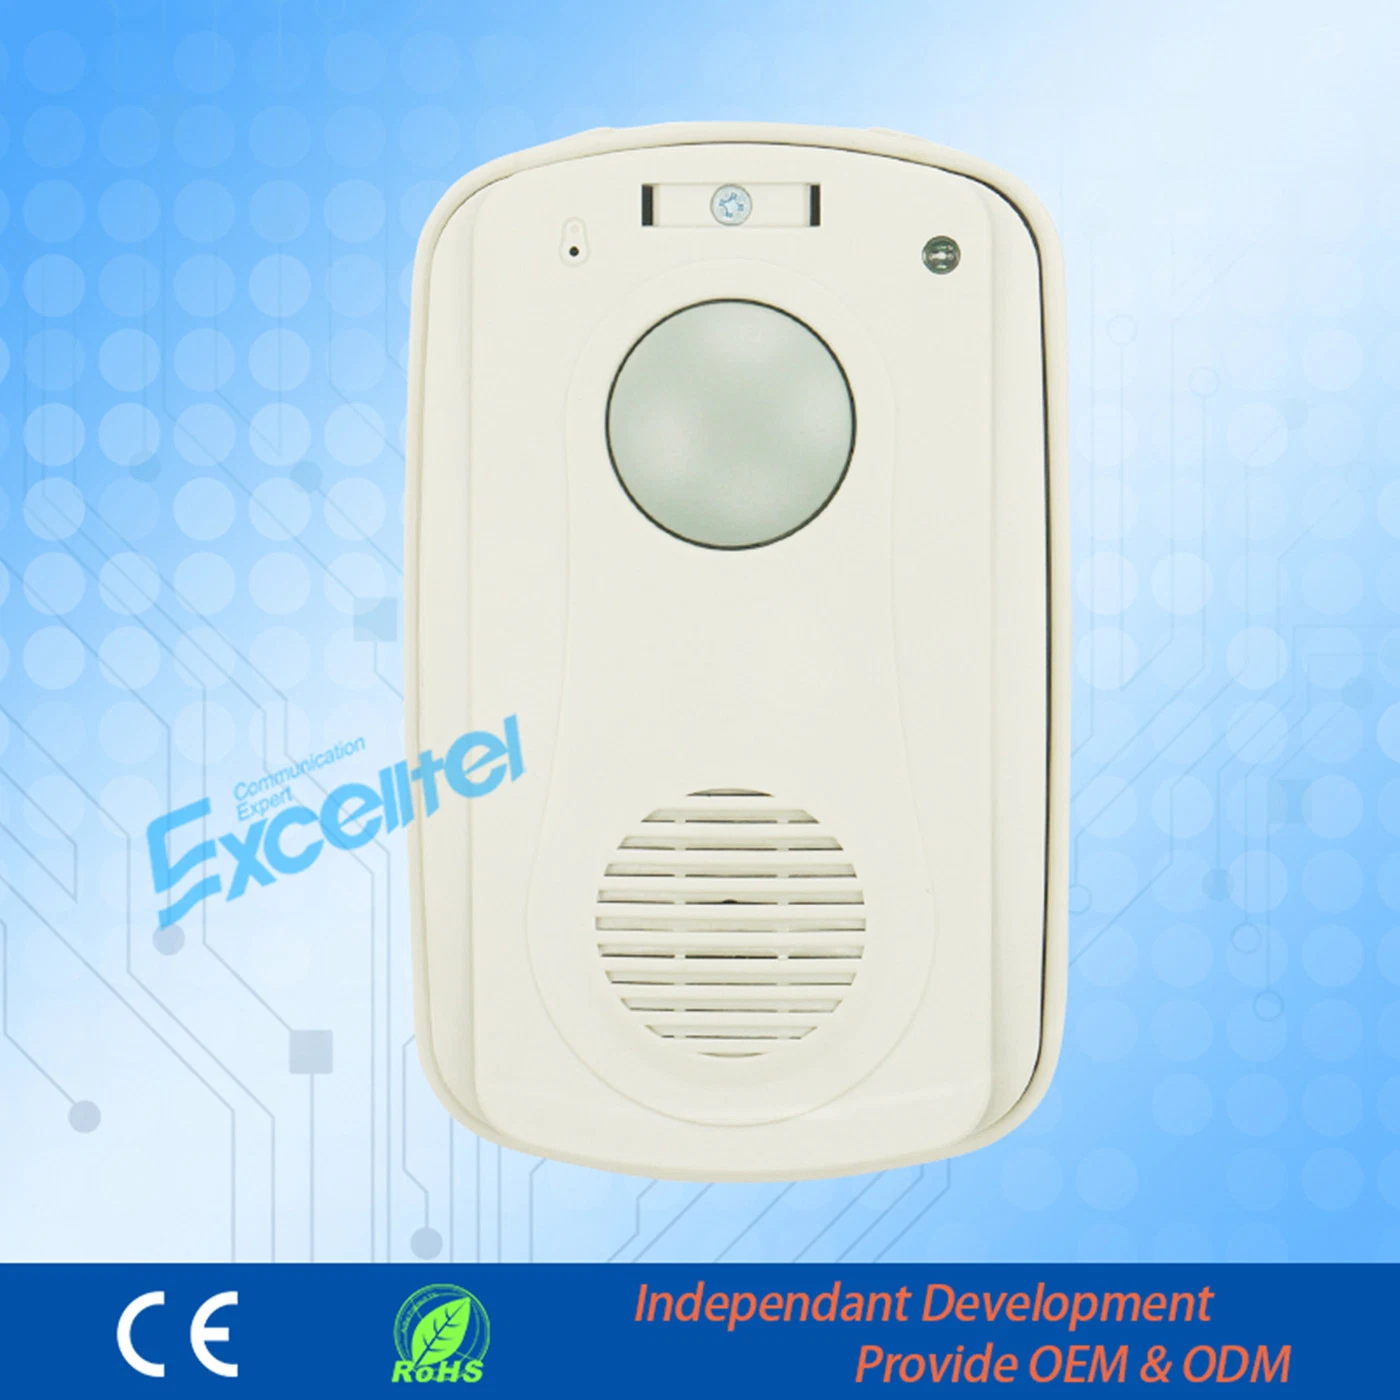 El control de seguridad del sistema de intercomunicación de timbre para Excelltel Doorphone PBX.